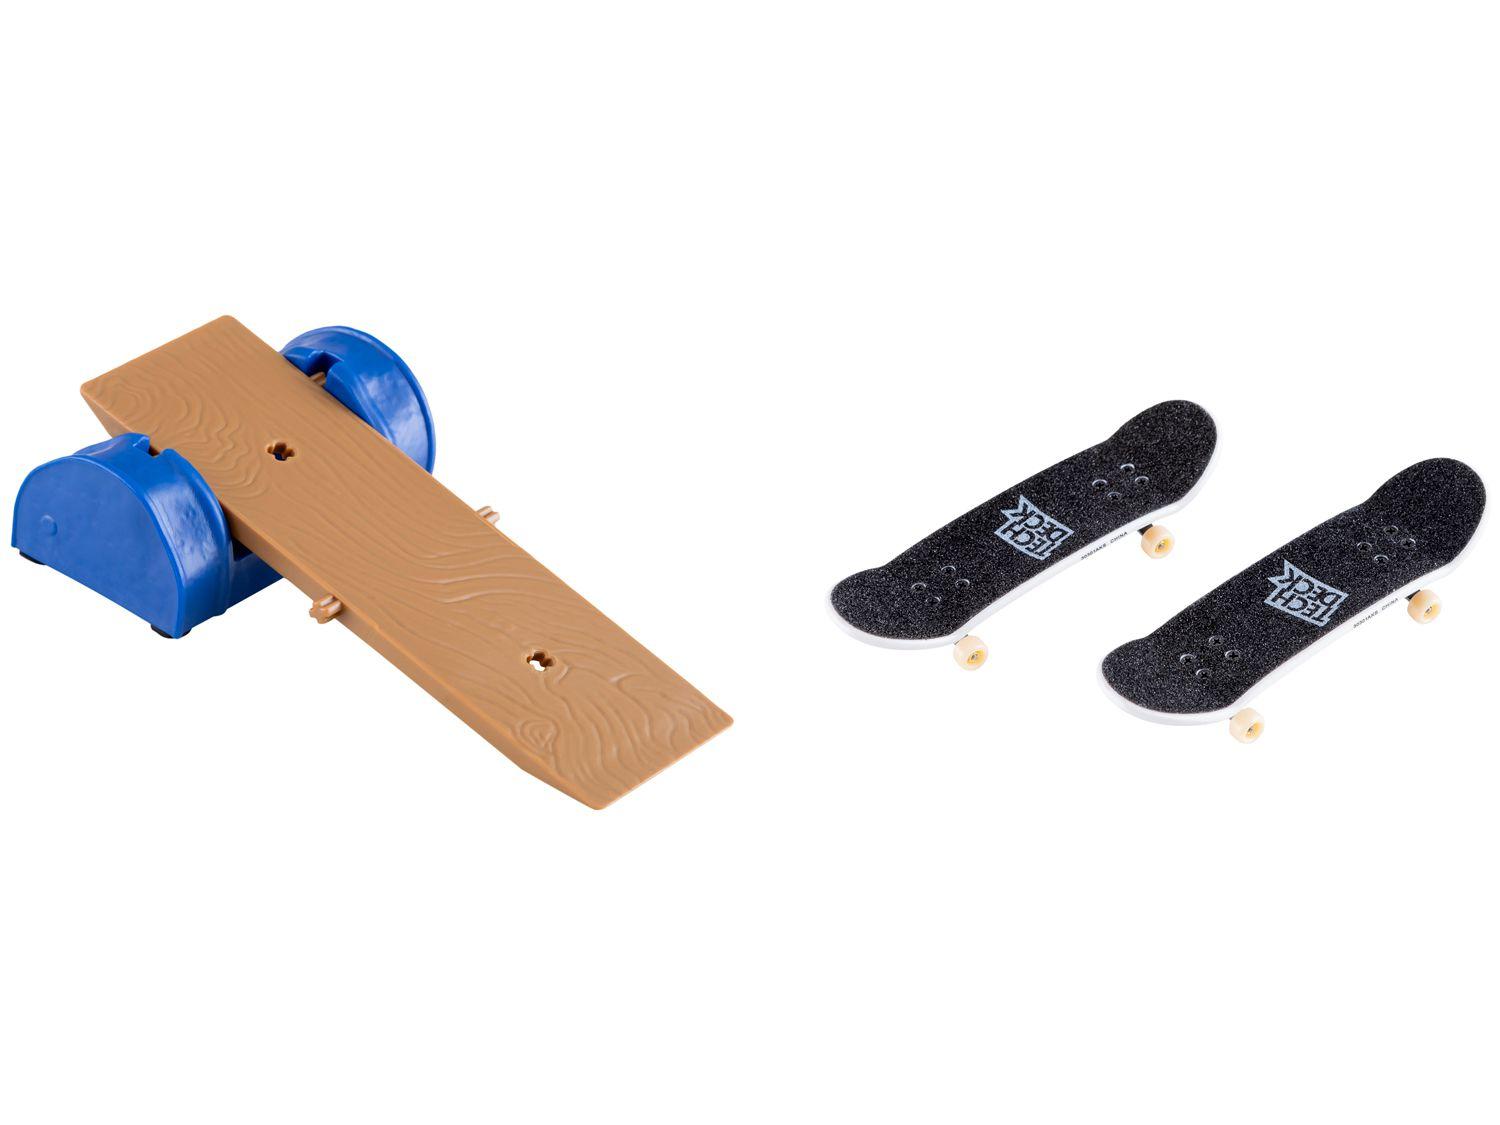 Compre Tech Deck - Pack com 8 Skates de Dedo Aniversário de 25